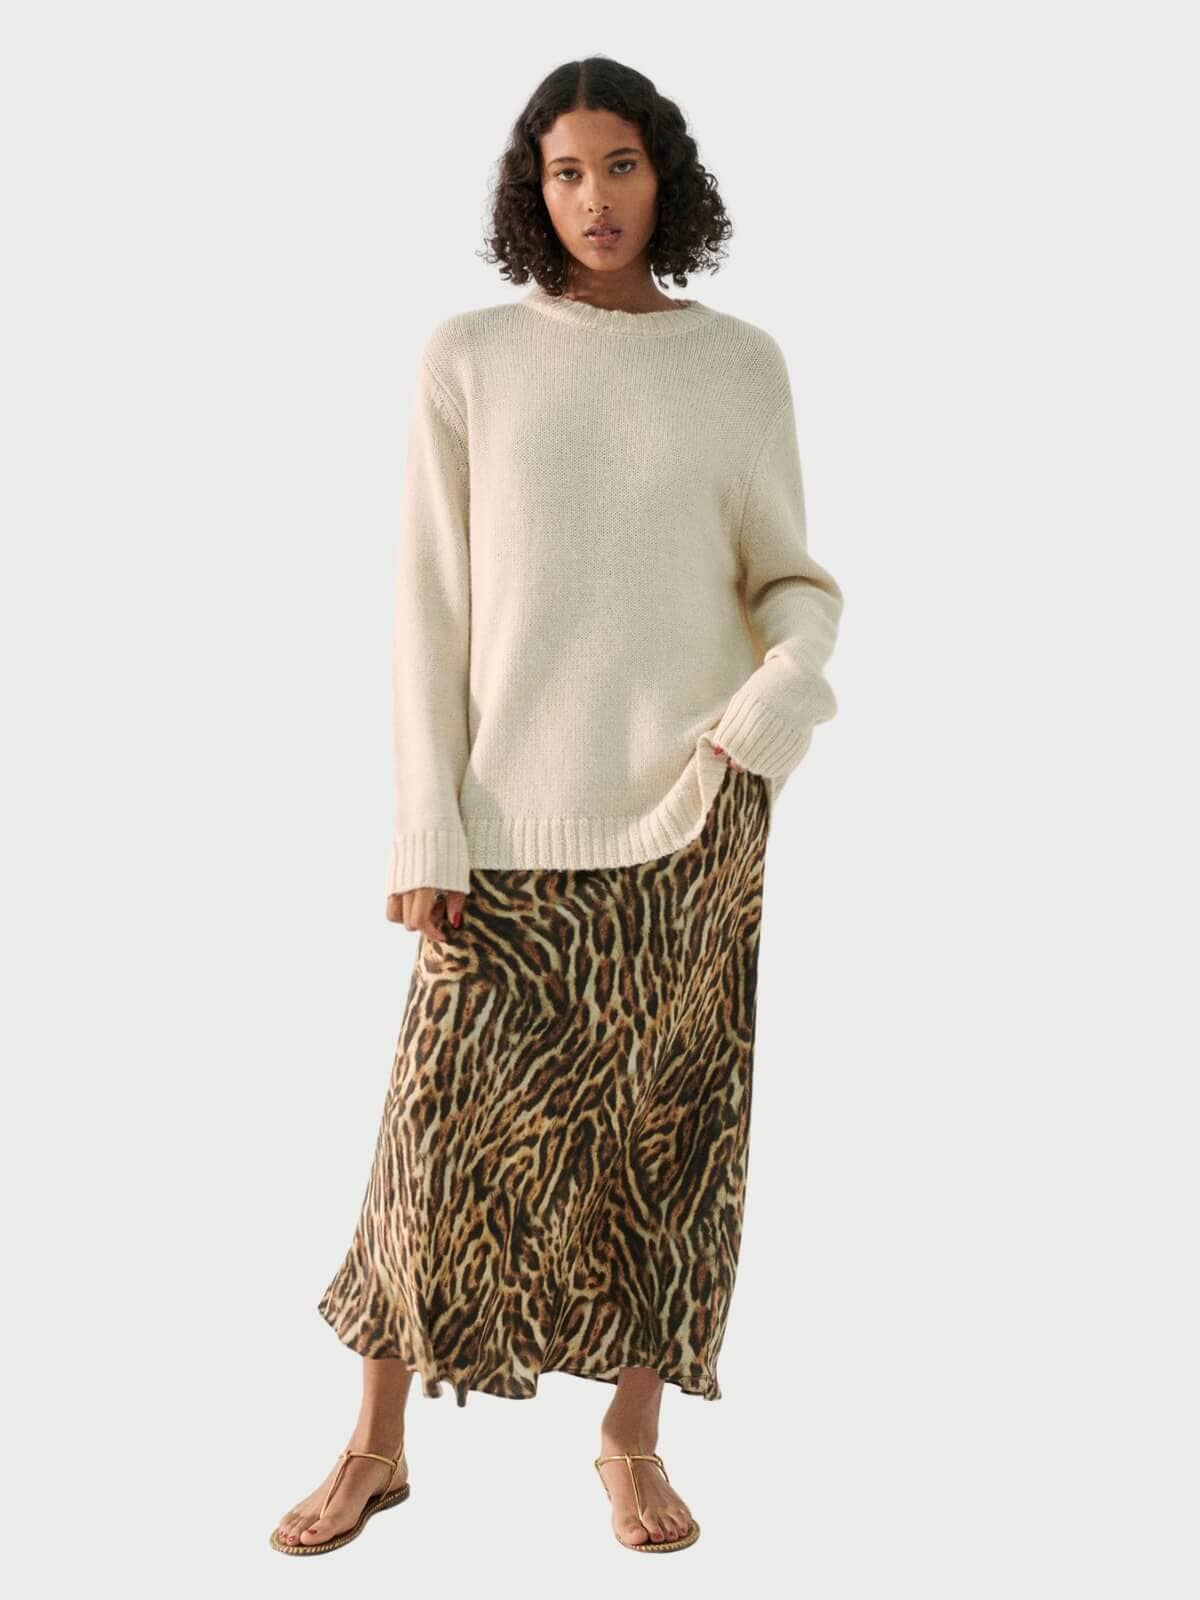 Silk Laundry | Long Bias Cut Skirt - Leopard | Perlu